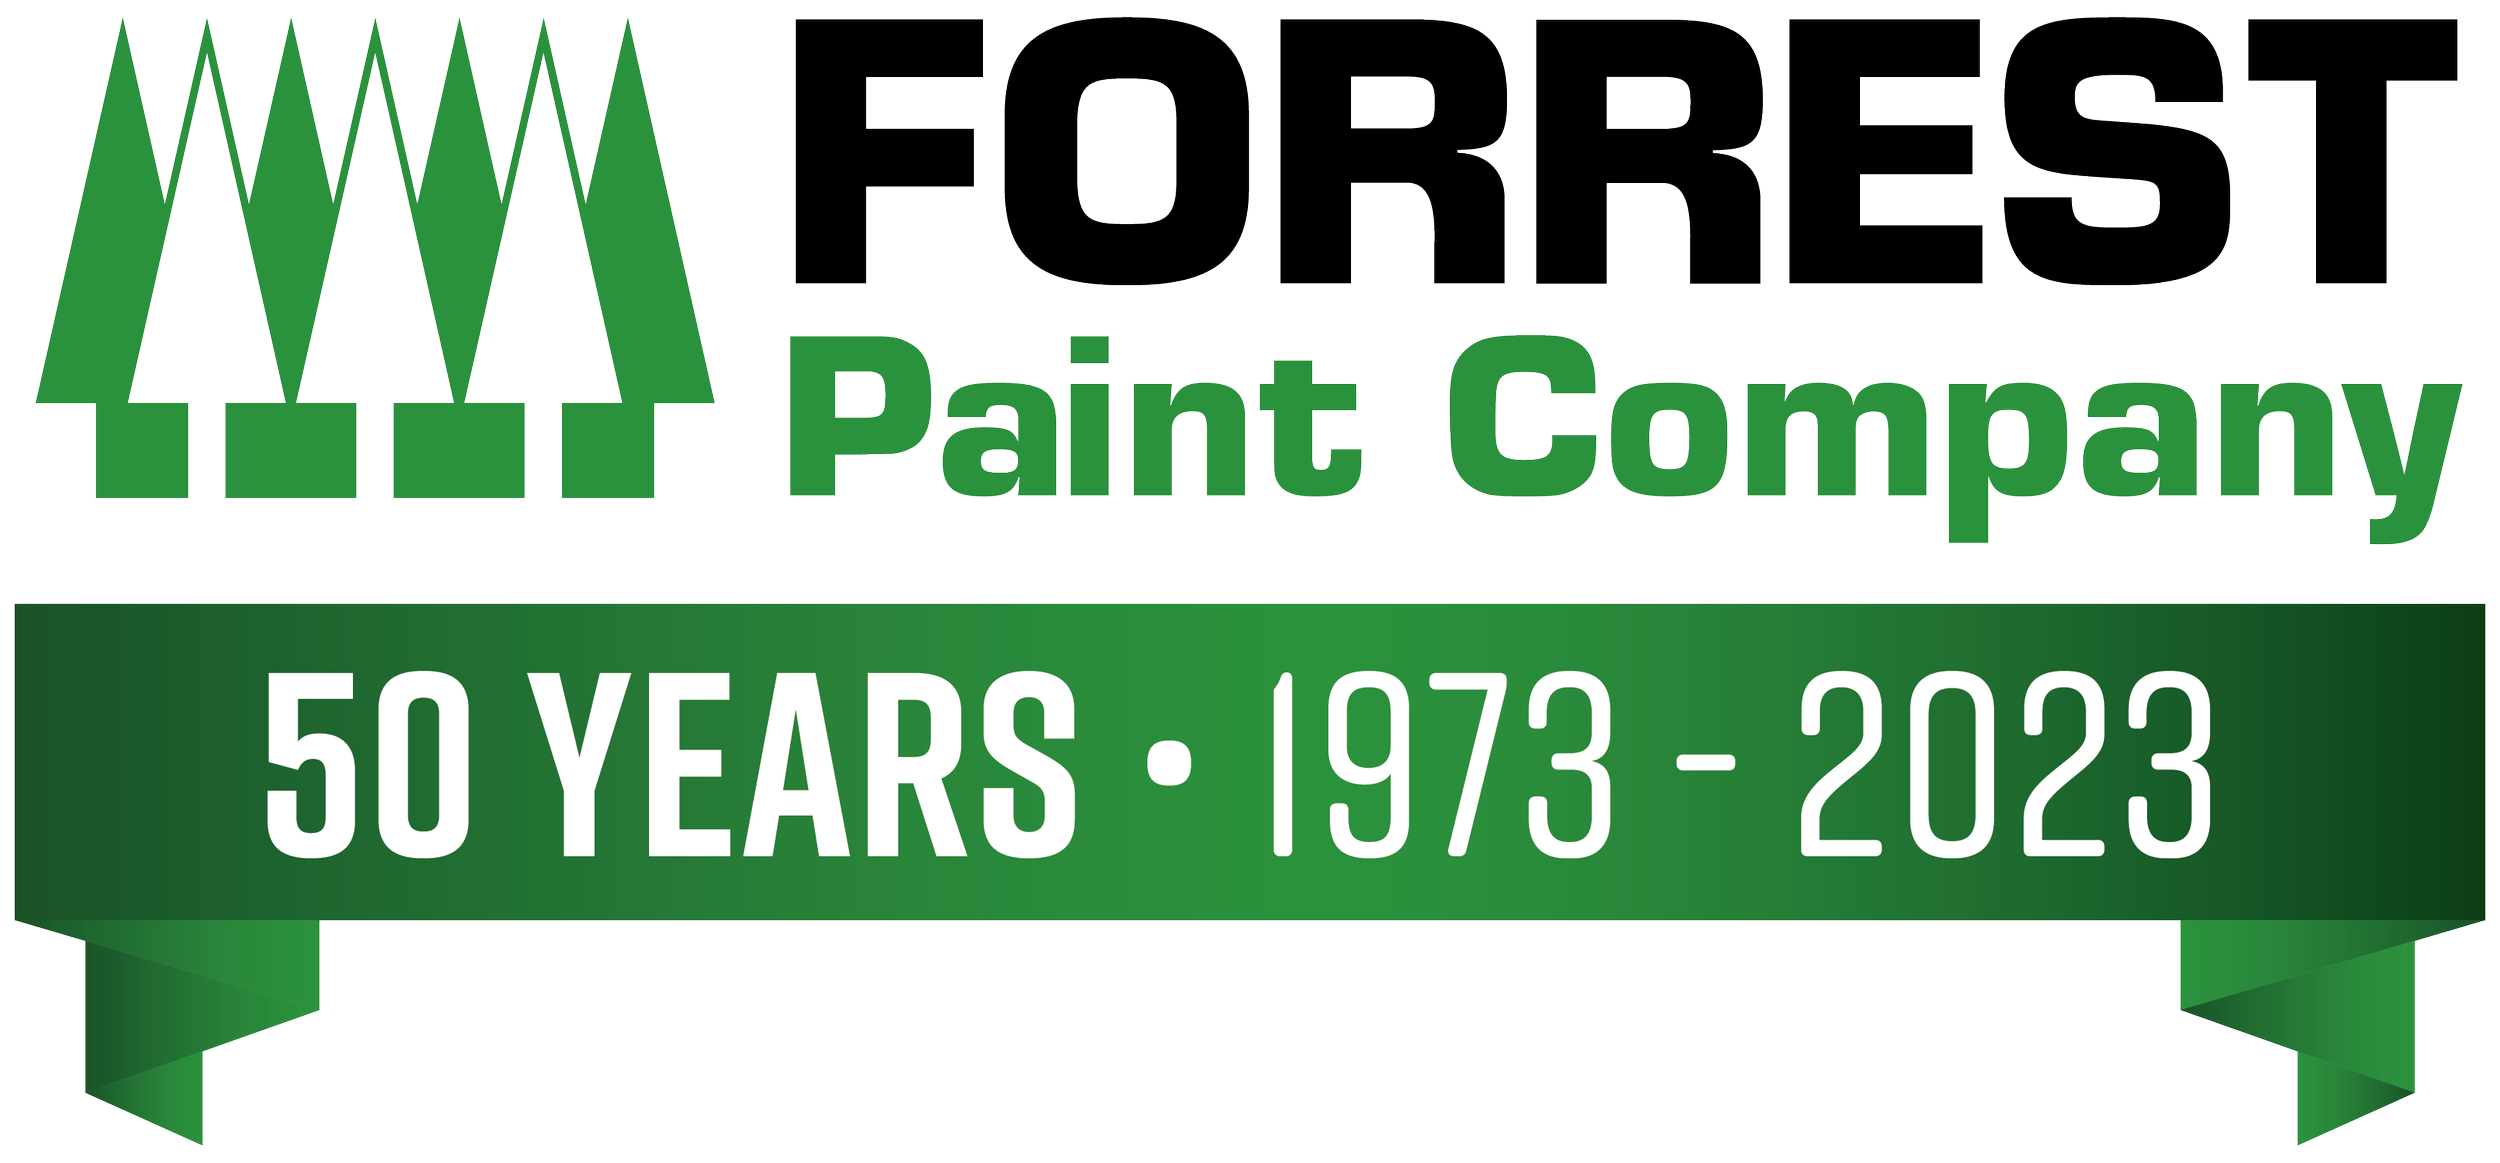 Forrest Paint